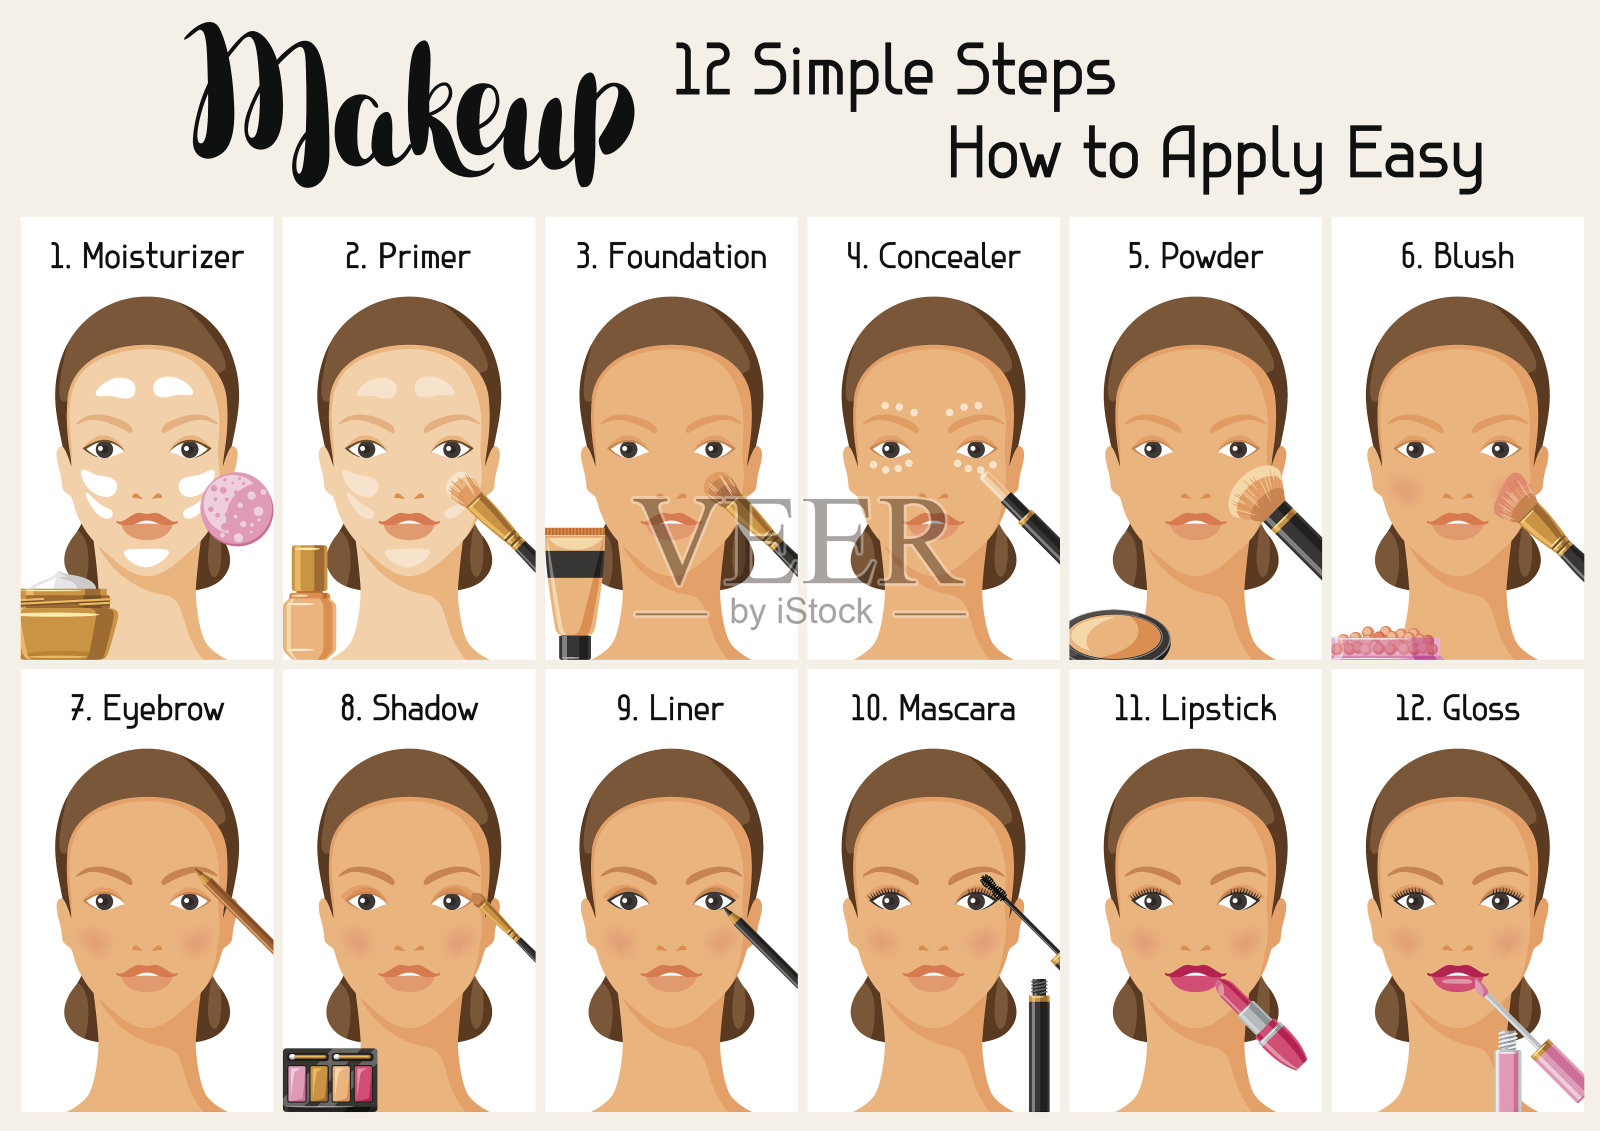 化妆12个简单步骤如何轻松运用。用于目录或广告的信息横幅插画图片素材